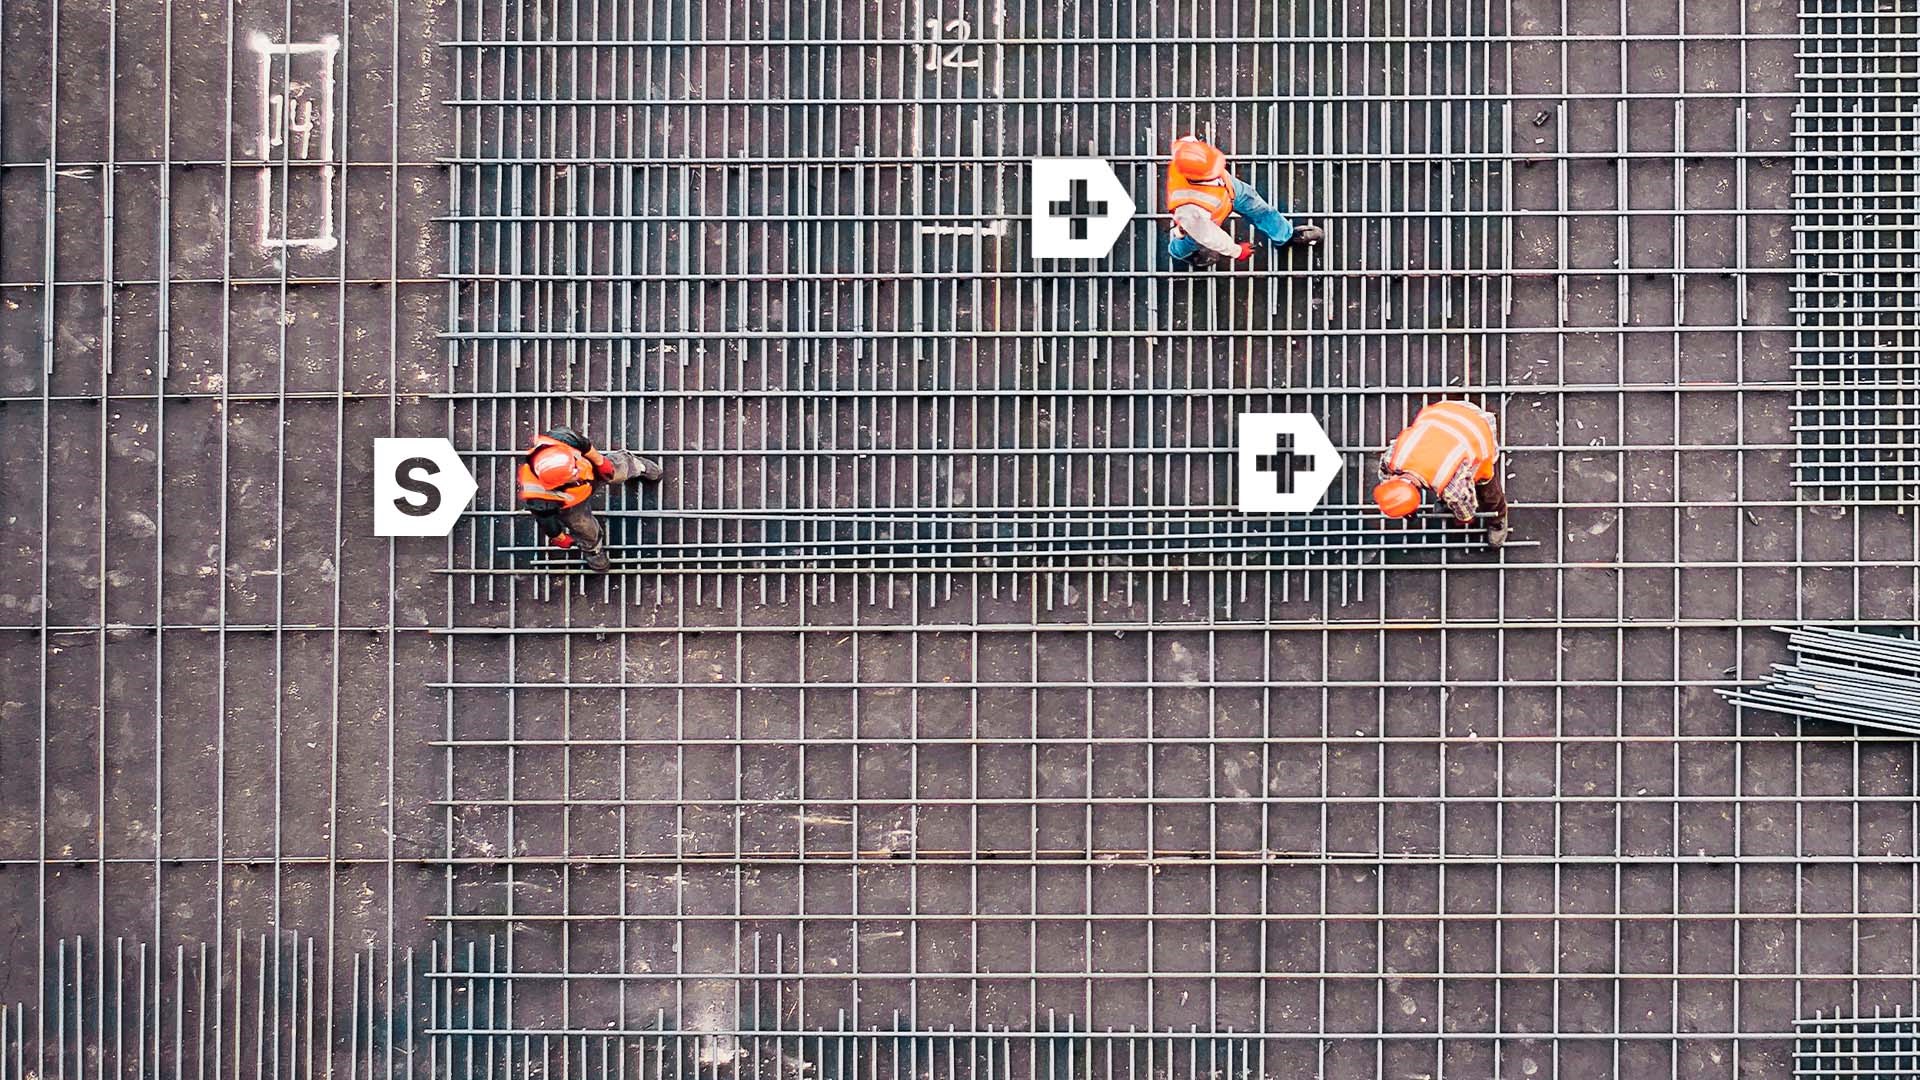 3 travailleurs dans un chantier de construction, vue de haut en bas, logos Simplex visants chaque travailleur et un symbole "+" sur 2 des travailleurs.